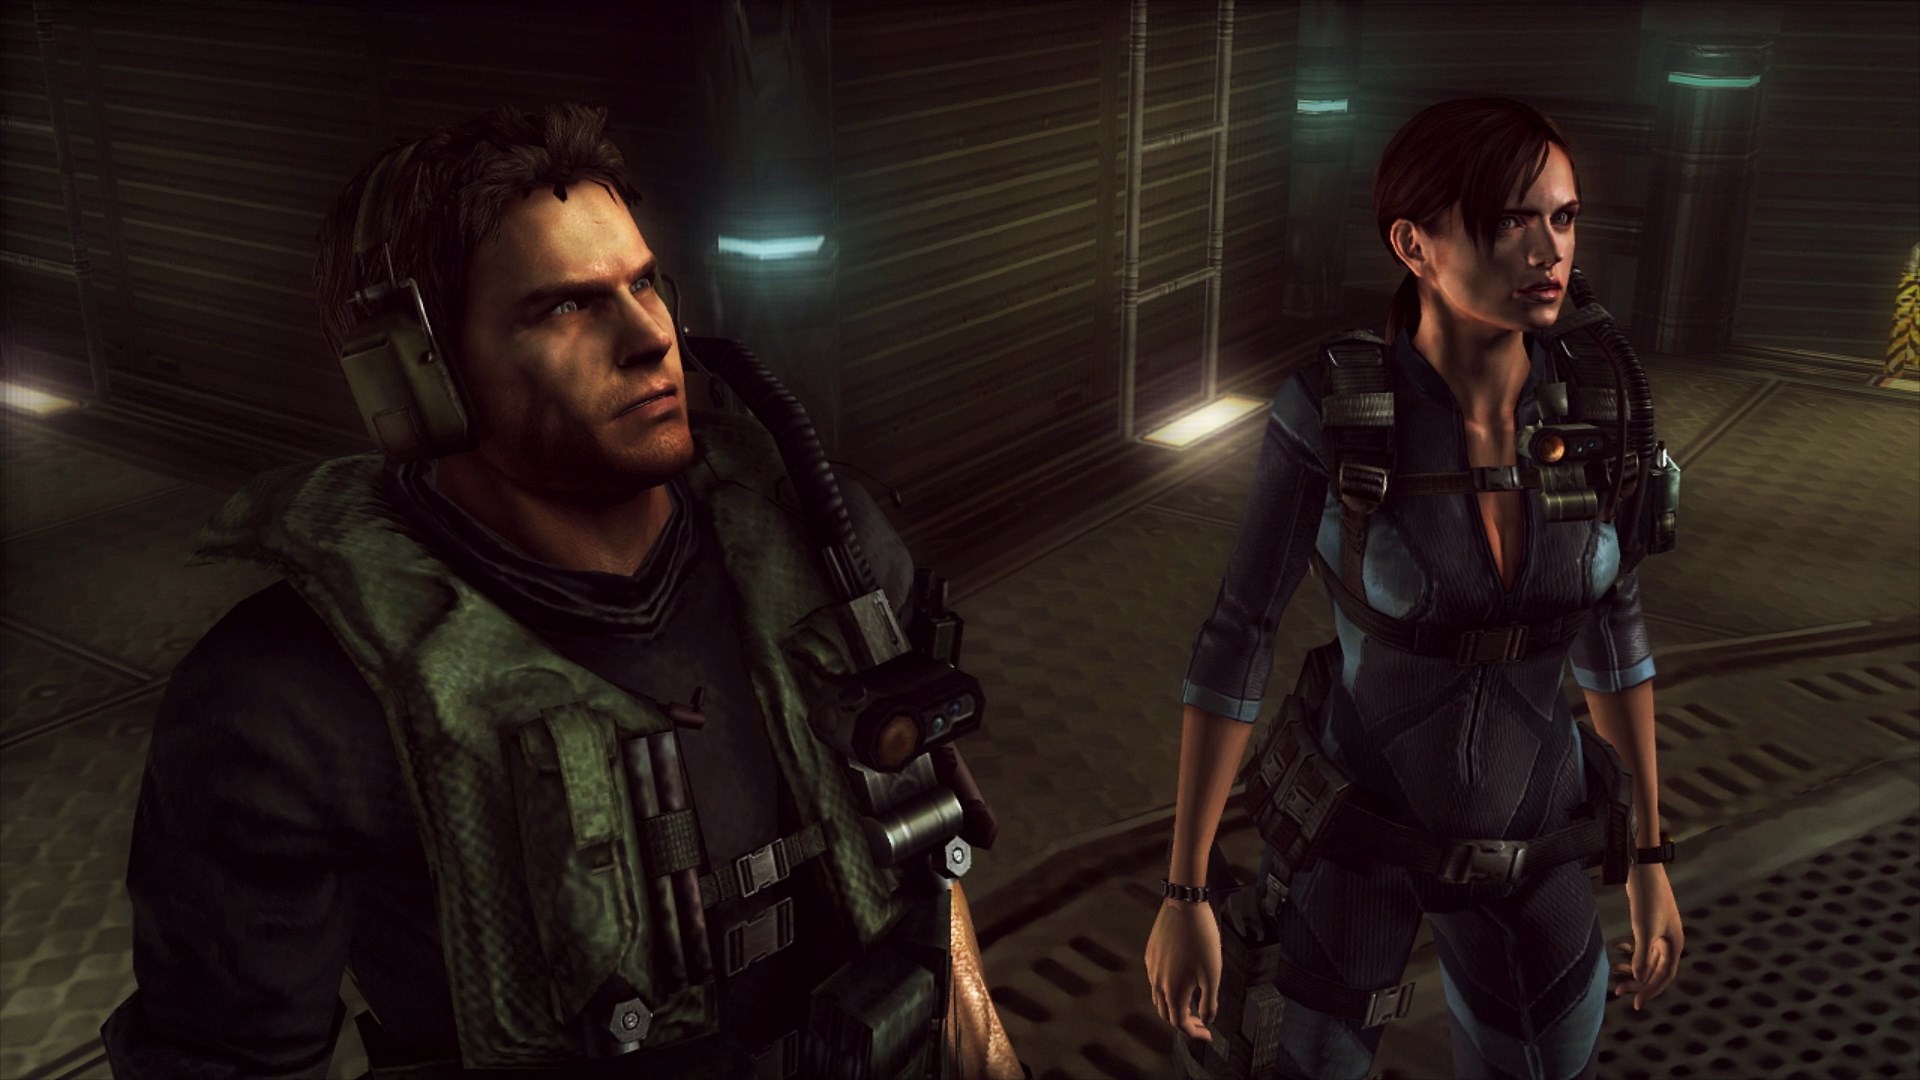 HD wallpaper: Resident Evil, Resident Evil Revalations, Jill Valentine